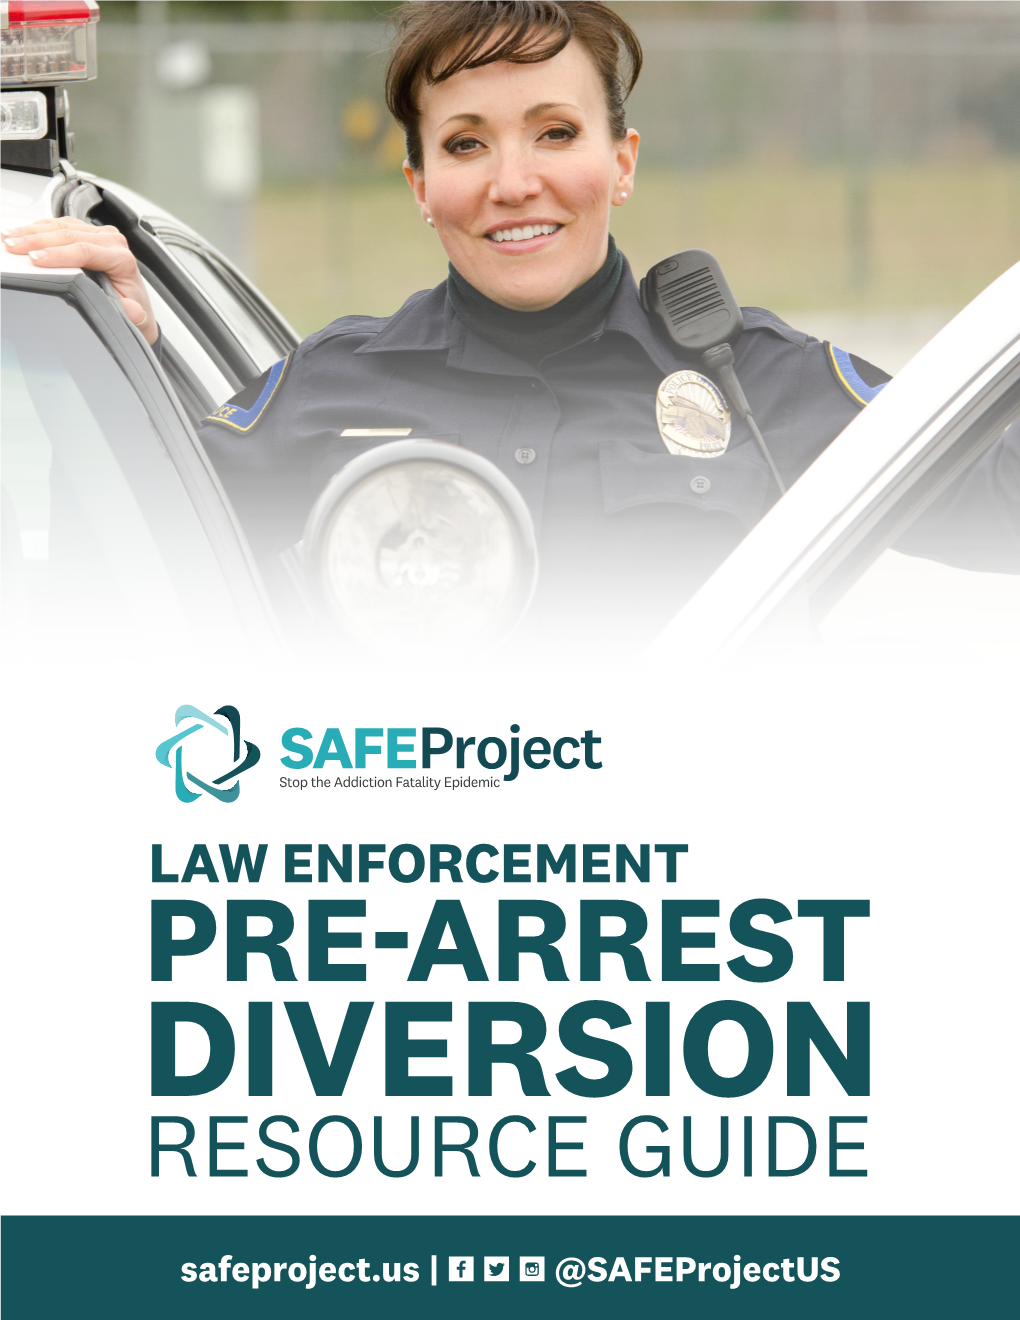 Law Enforcement Pre-Arrest Diversion Resource Guide | 1 2 | Law Enforcement Pre-Arrest Diversion Resource Guide OUR COLLABORATION